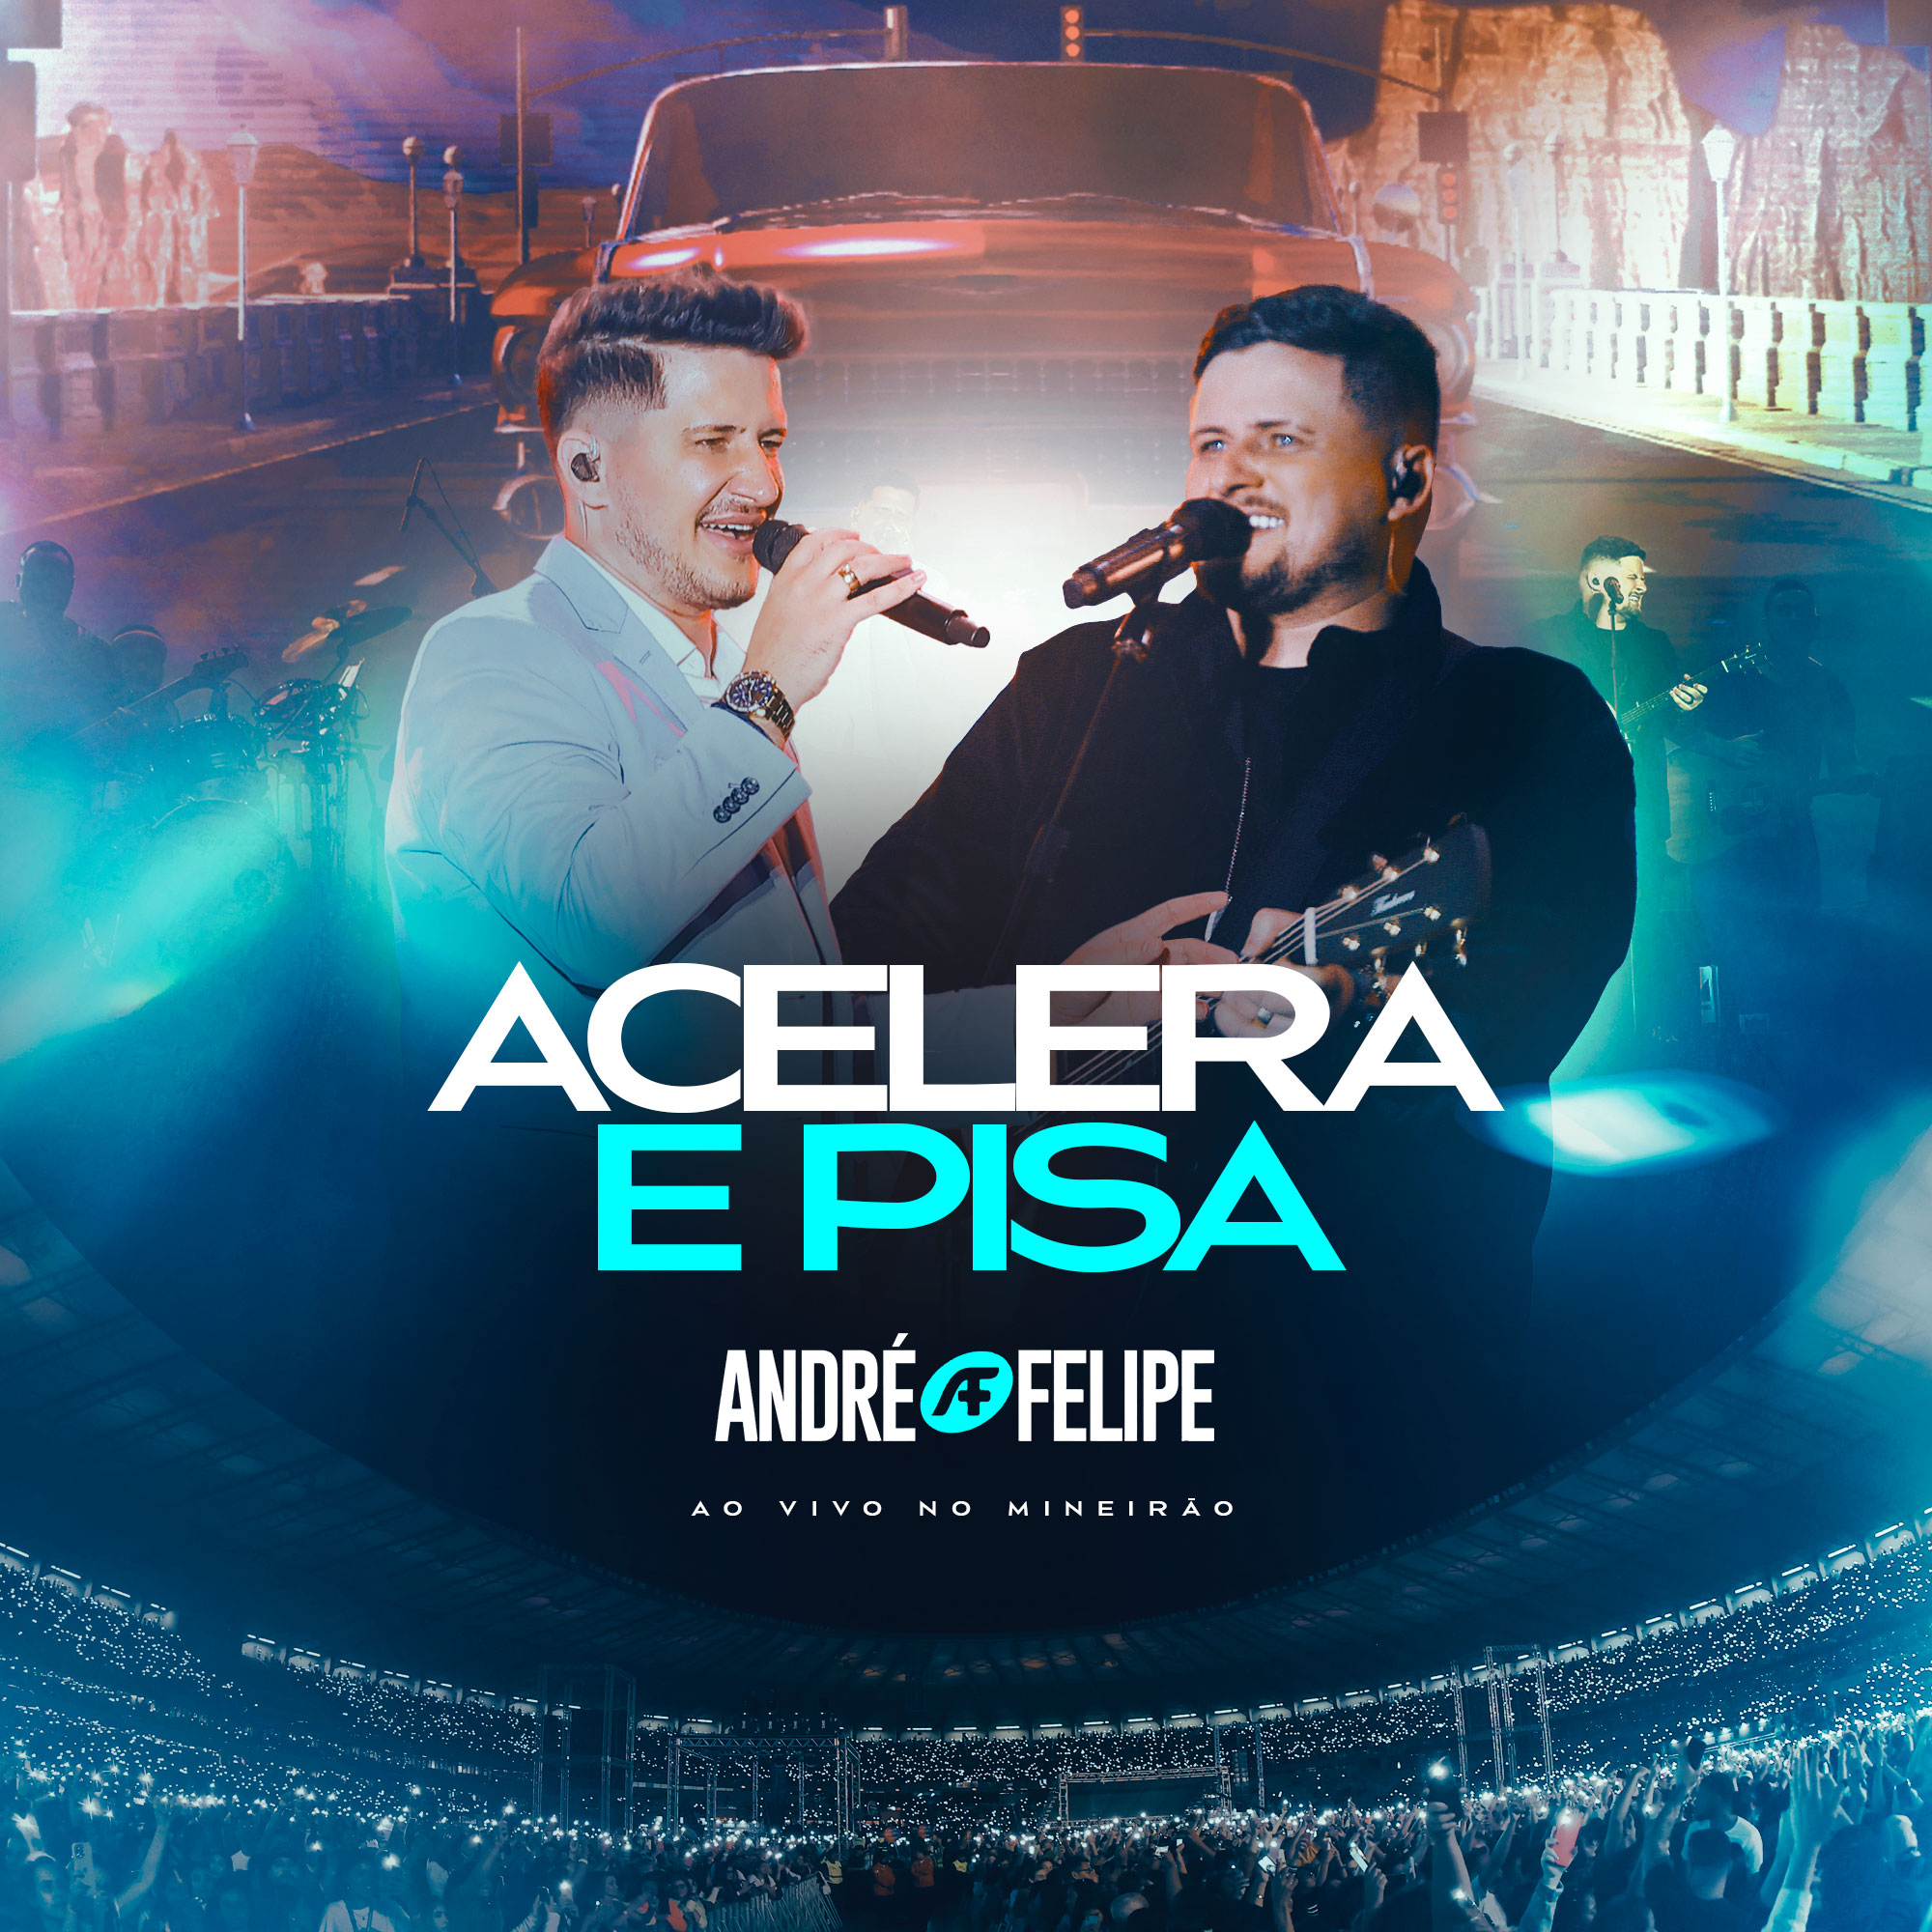 André e Felipe lançam a canção “Acelera e Pisa” (Ao Vivo no Mineirão)